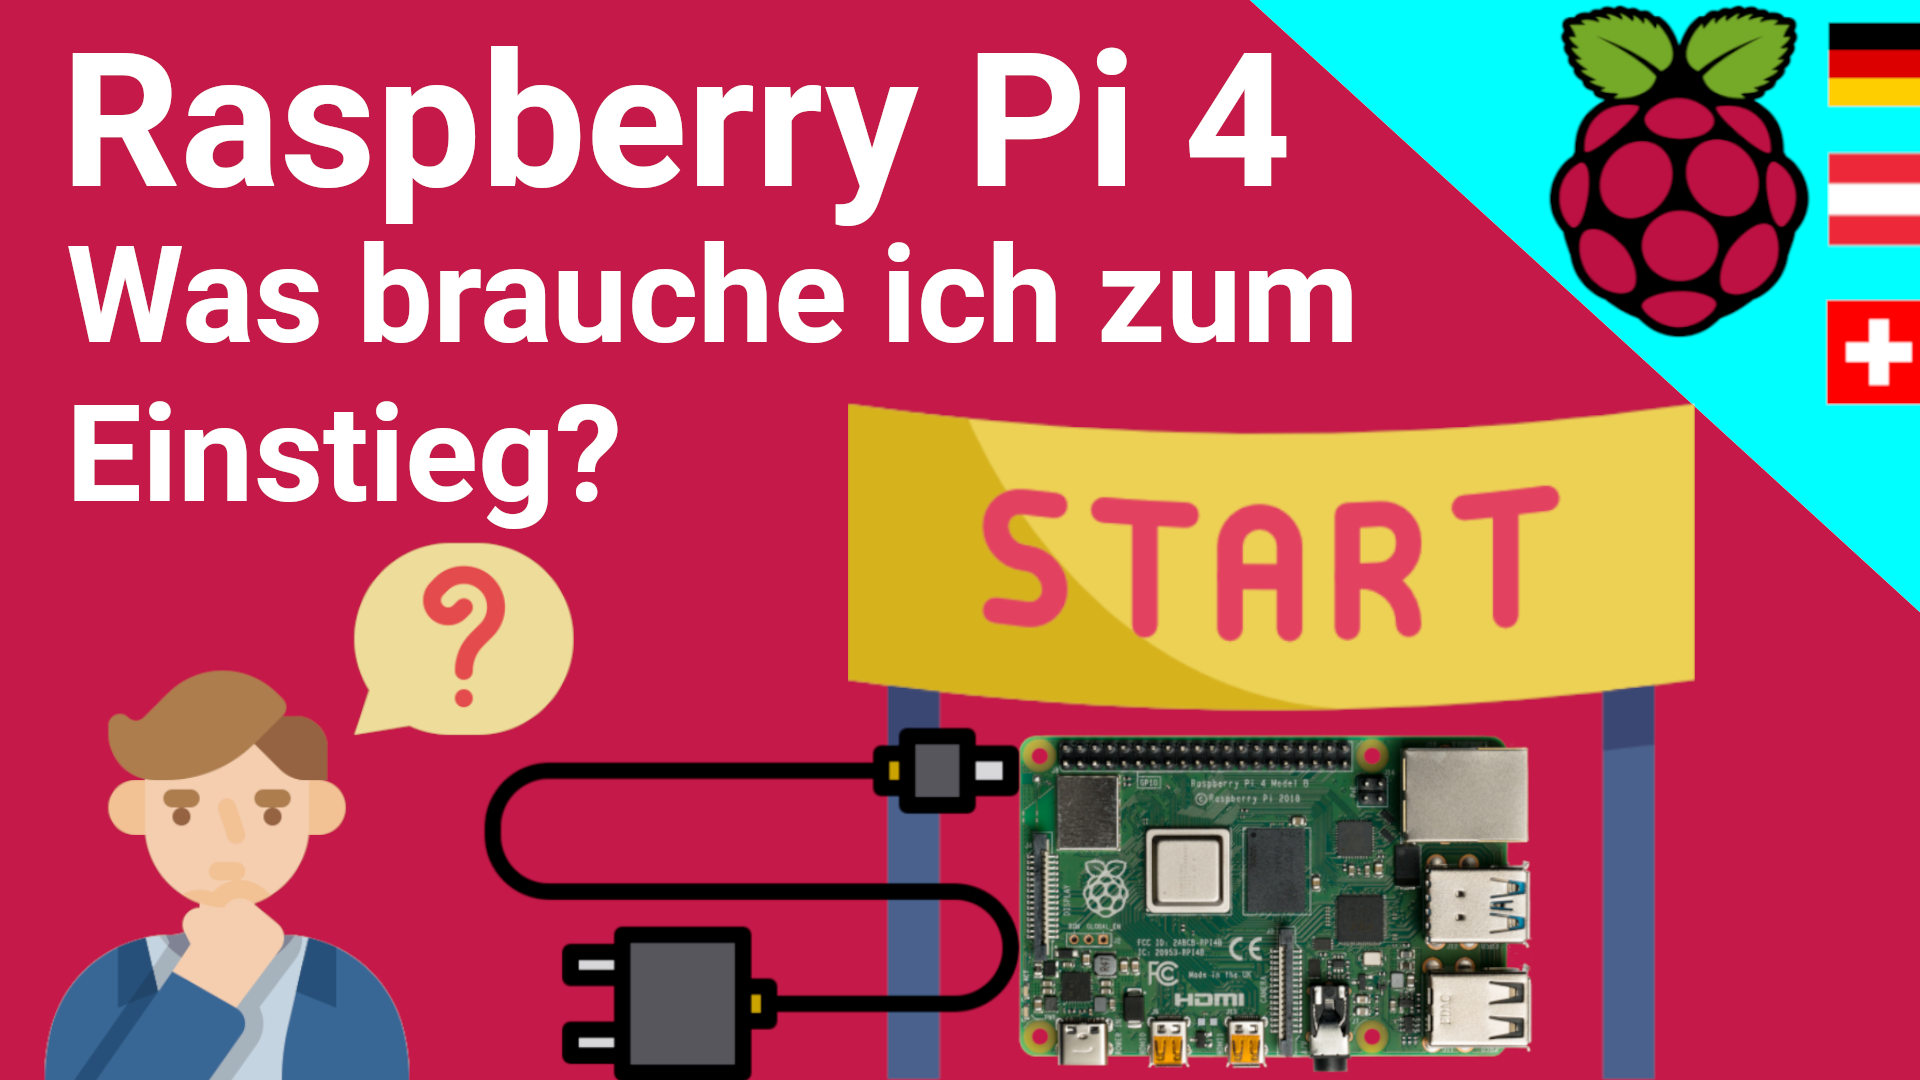 Raspberry Pi 4 Einstieg: Was braucht man für den Einstieg und warum? Einkaufsliste für Anfänger erklärt (Text + Video)